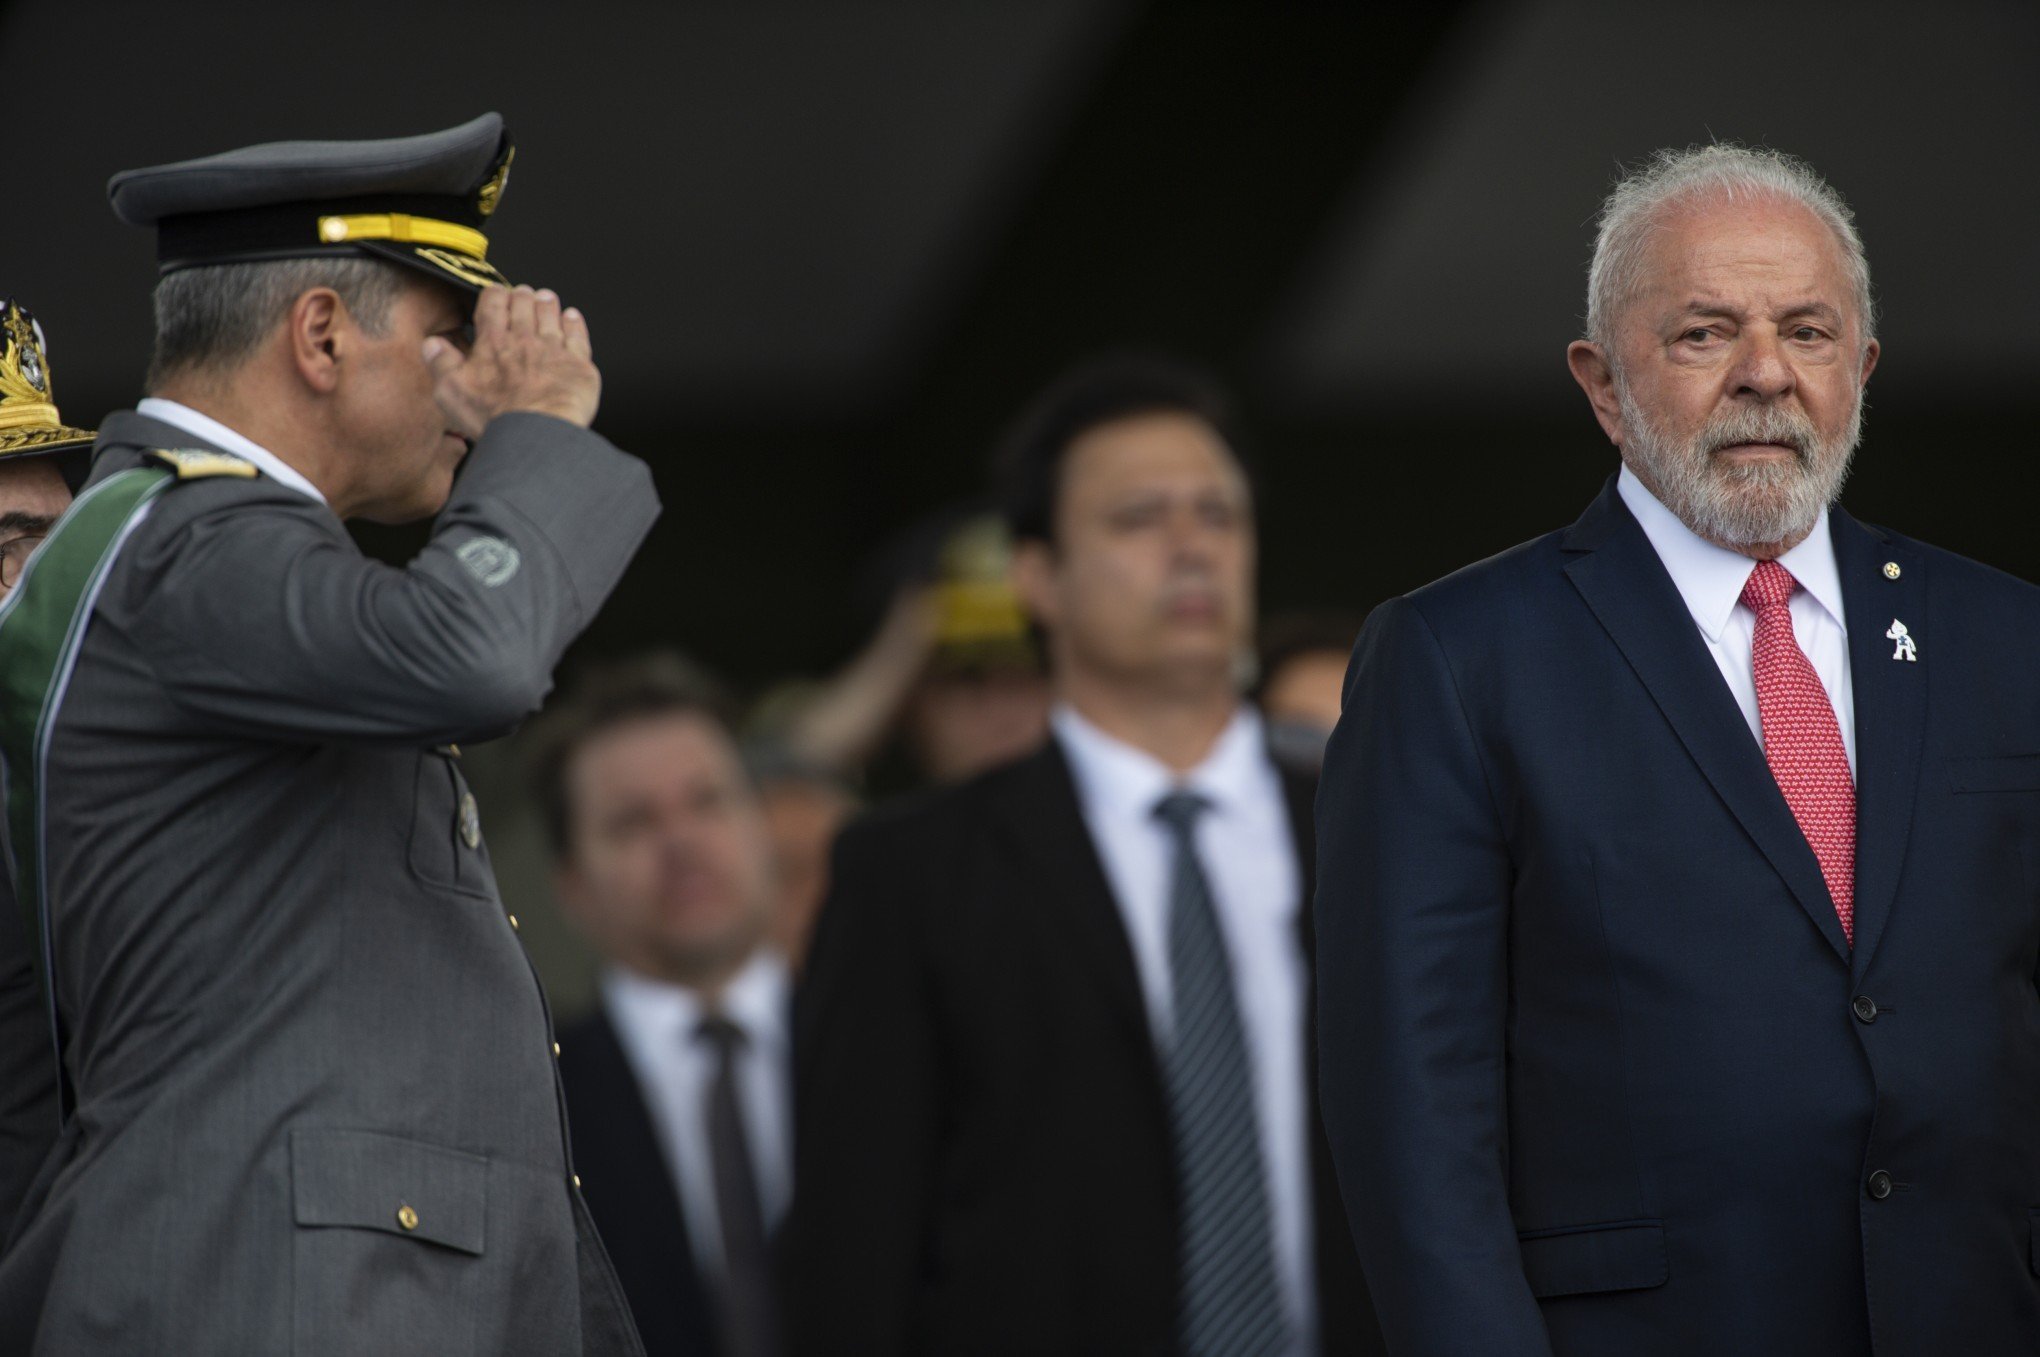 Exército deve ser "apolítico", diz comandante em cerimônia com Lula